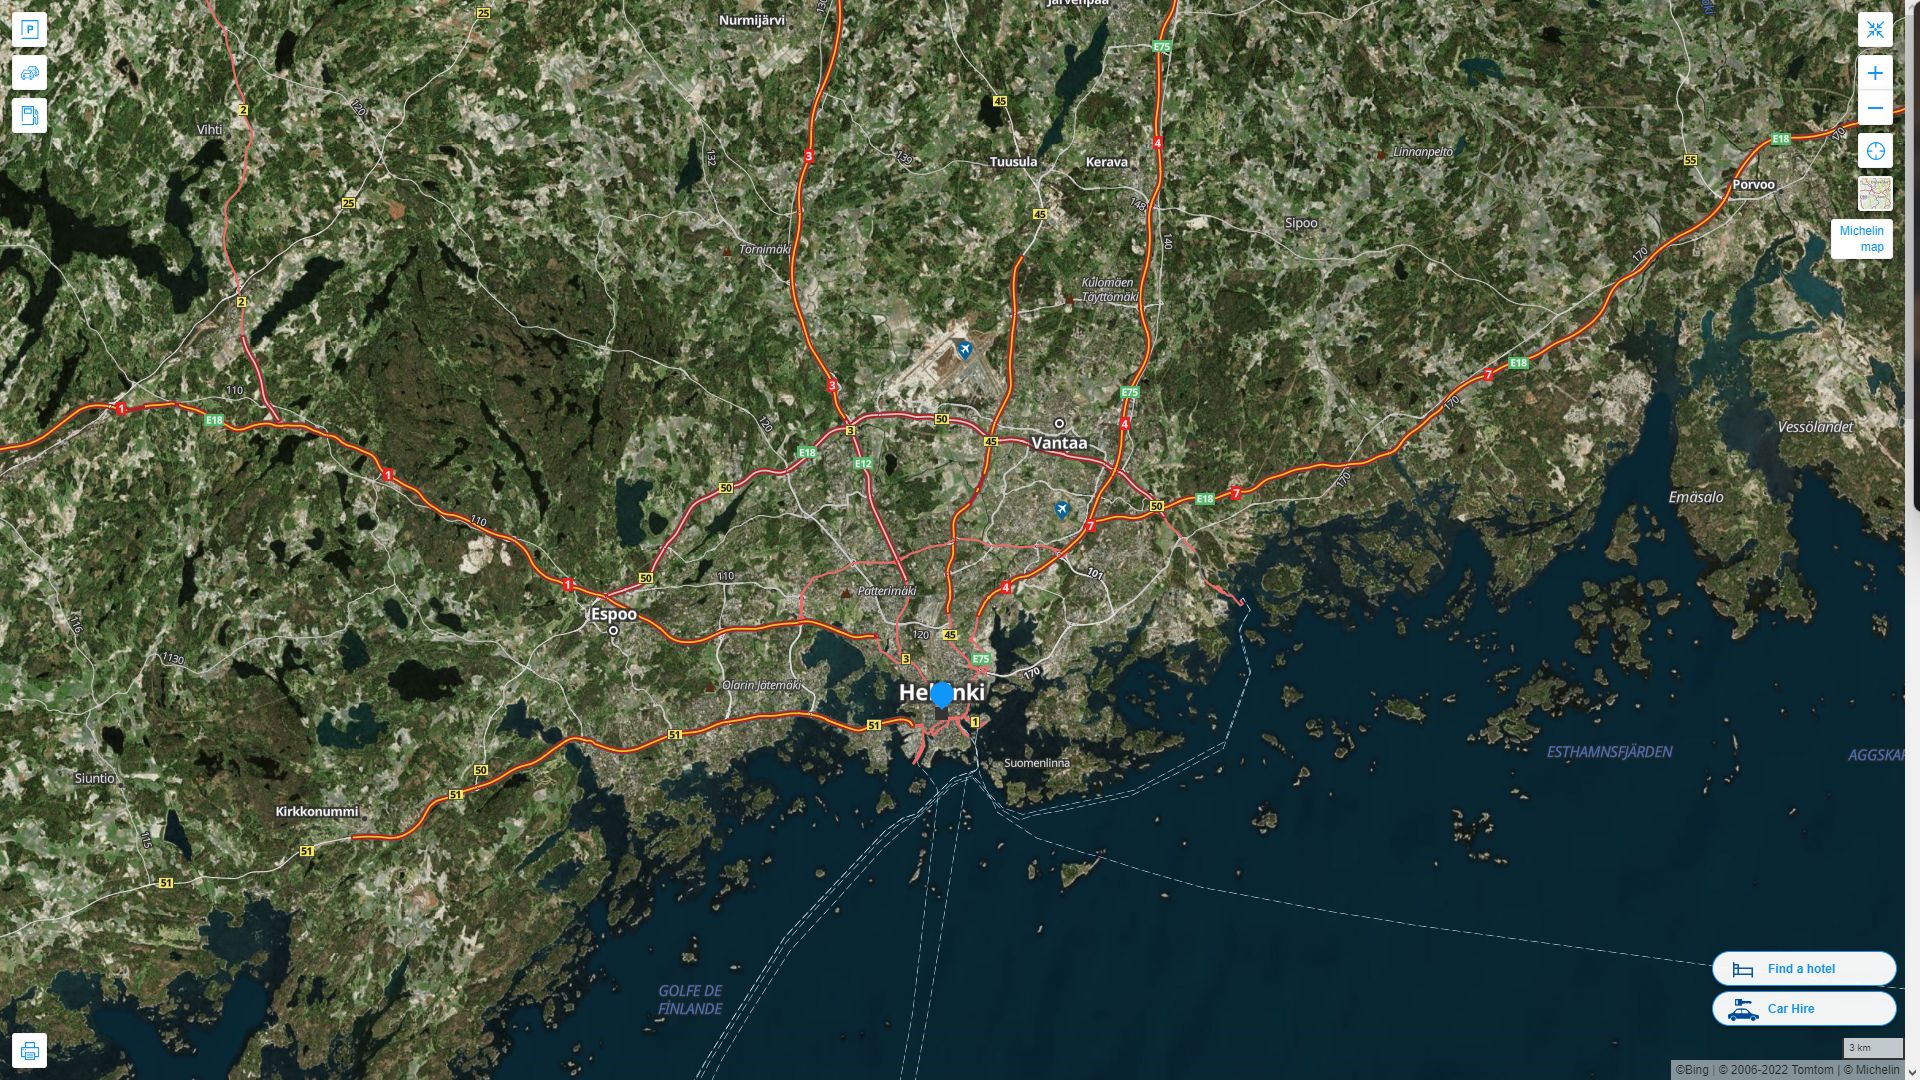 Helsinki Finlande Autoroute et carte routiere avec vue satellite